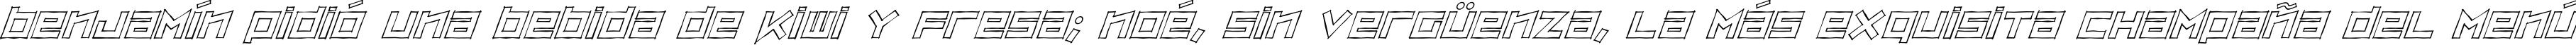 Пример написания шрифтом ZipSonikSketch-Italic текста на испанском